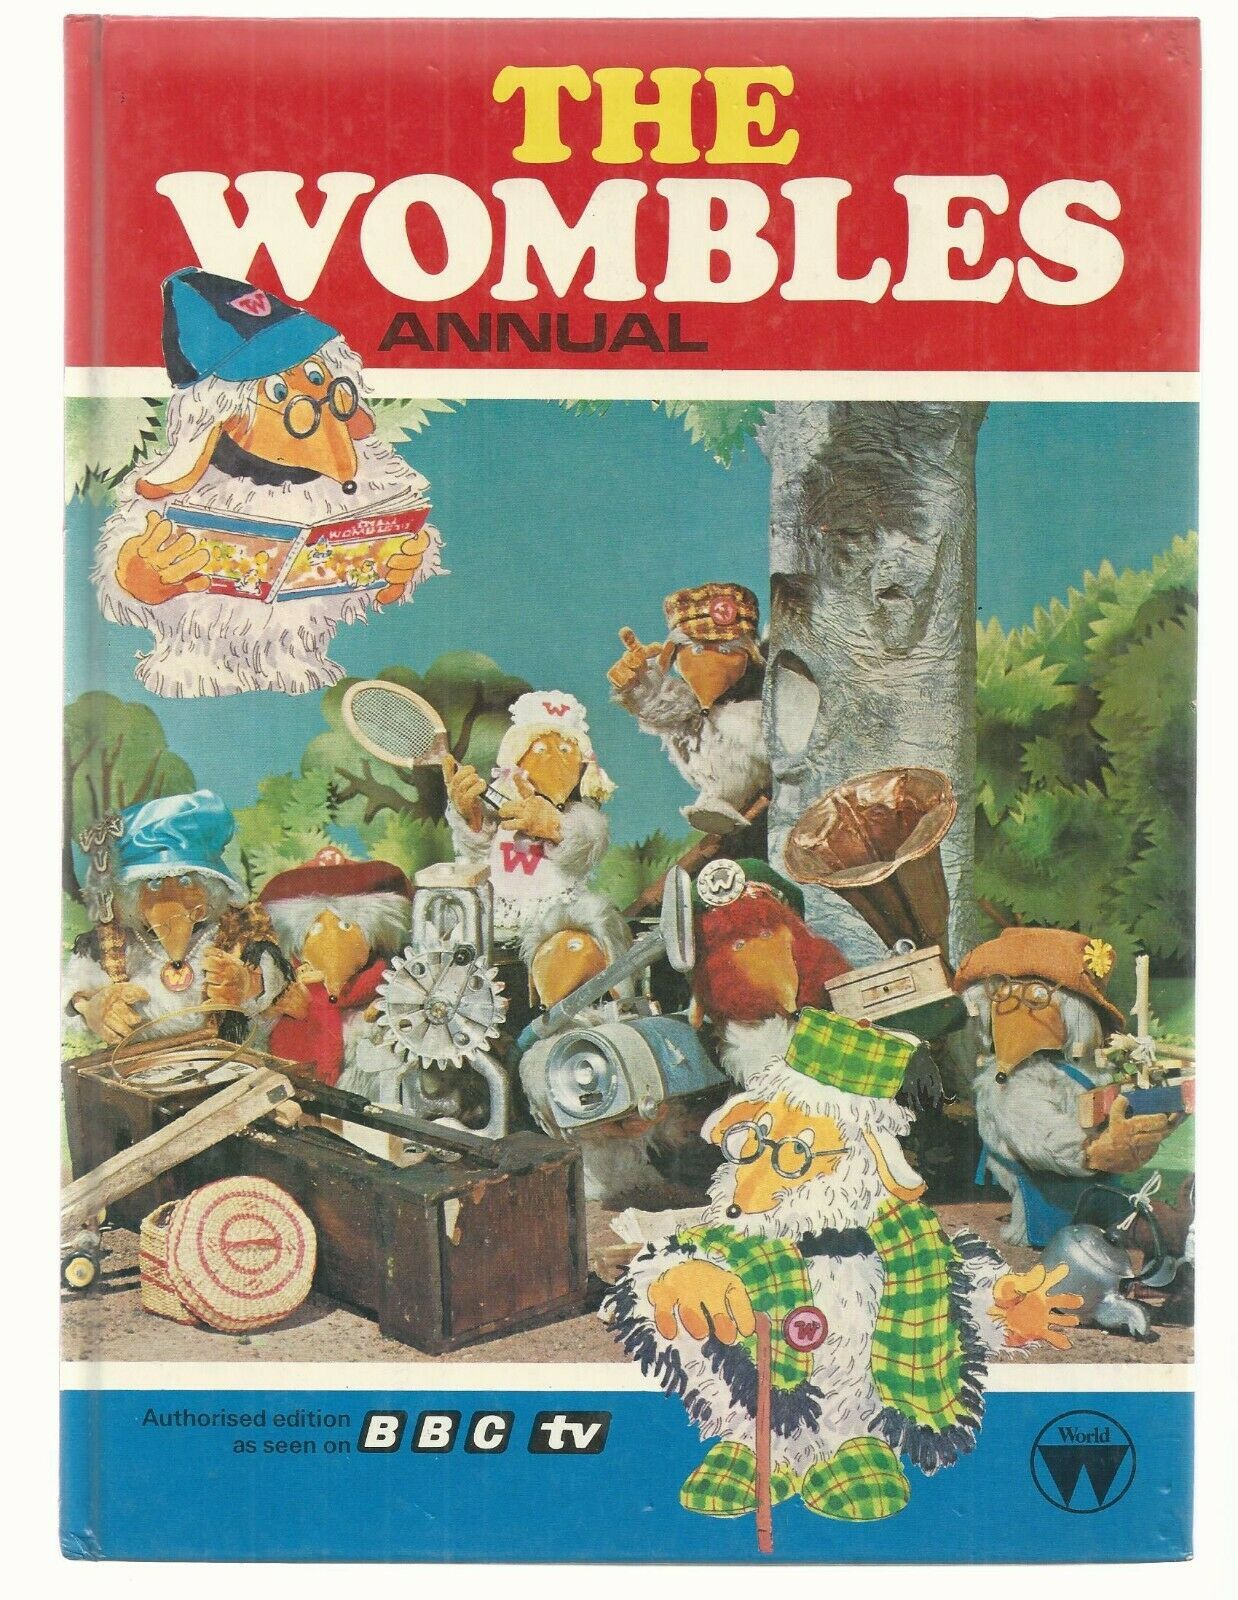 THE WOOBLES ANNUAL    BBC  1978  1st  EX+++     U.K. WORLD DISTRIBUTORS